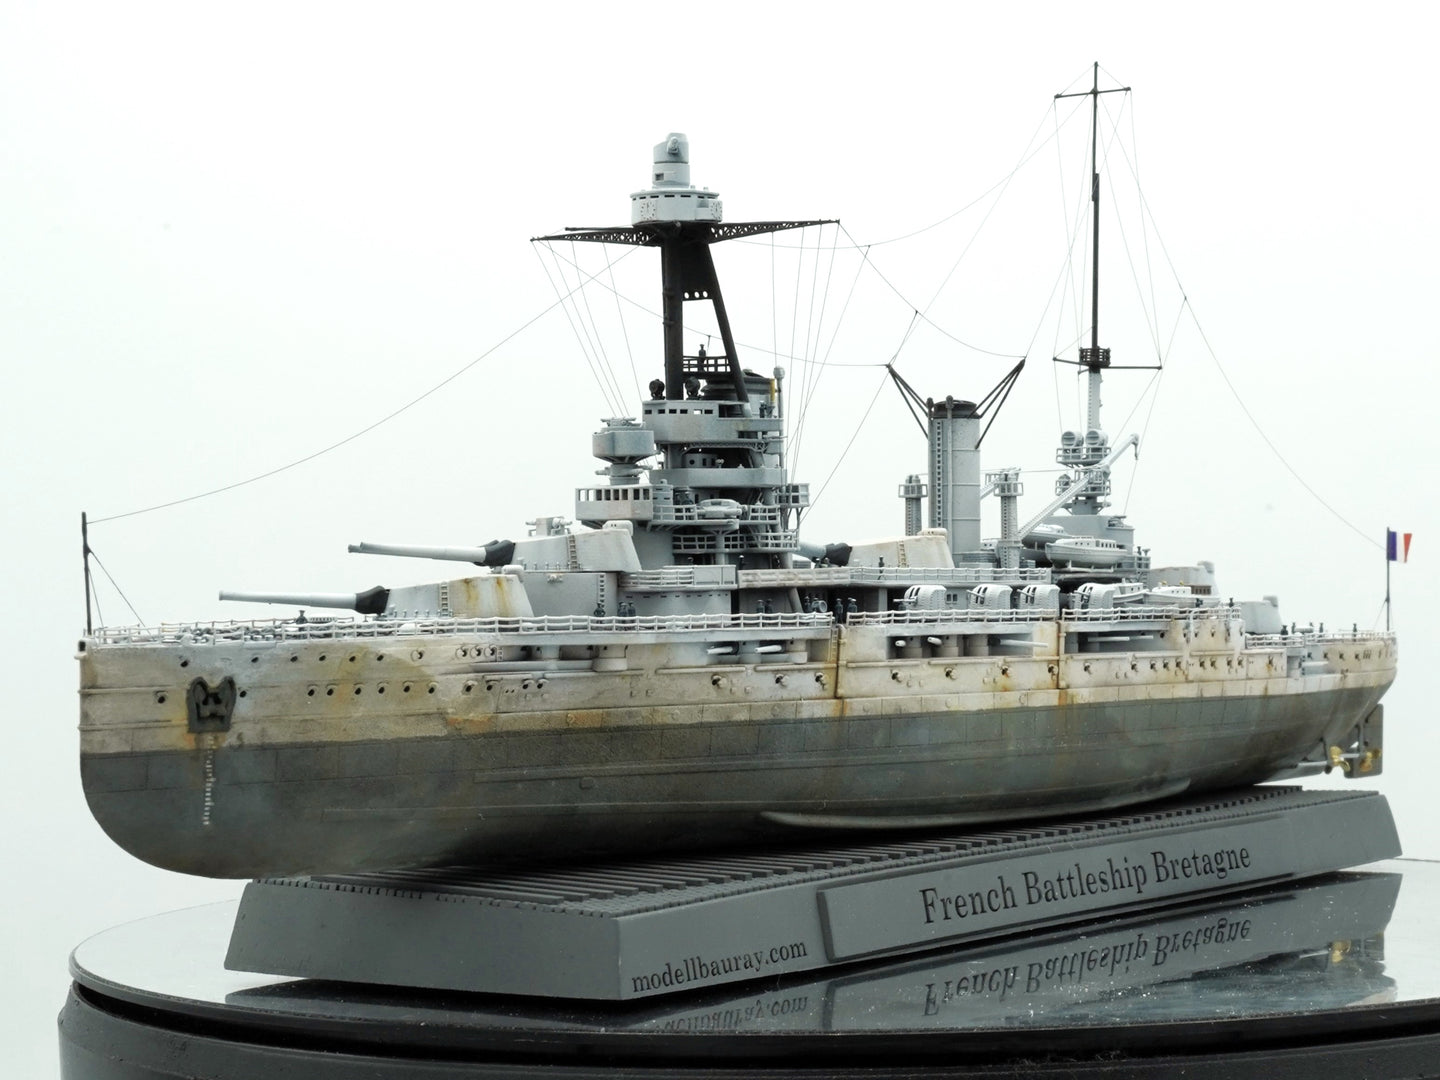 1:700 French Battleship Bretagne, Full Hull, WaterLine, Bretagne class battleship, French Battleship, 3d printed, resin model